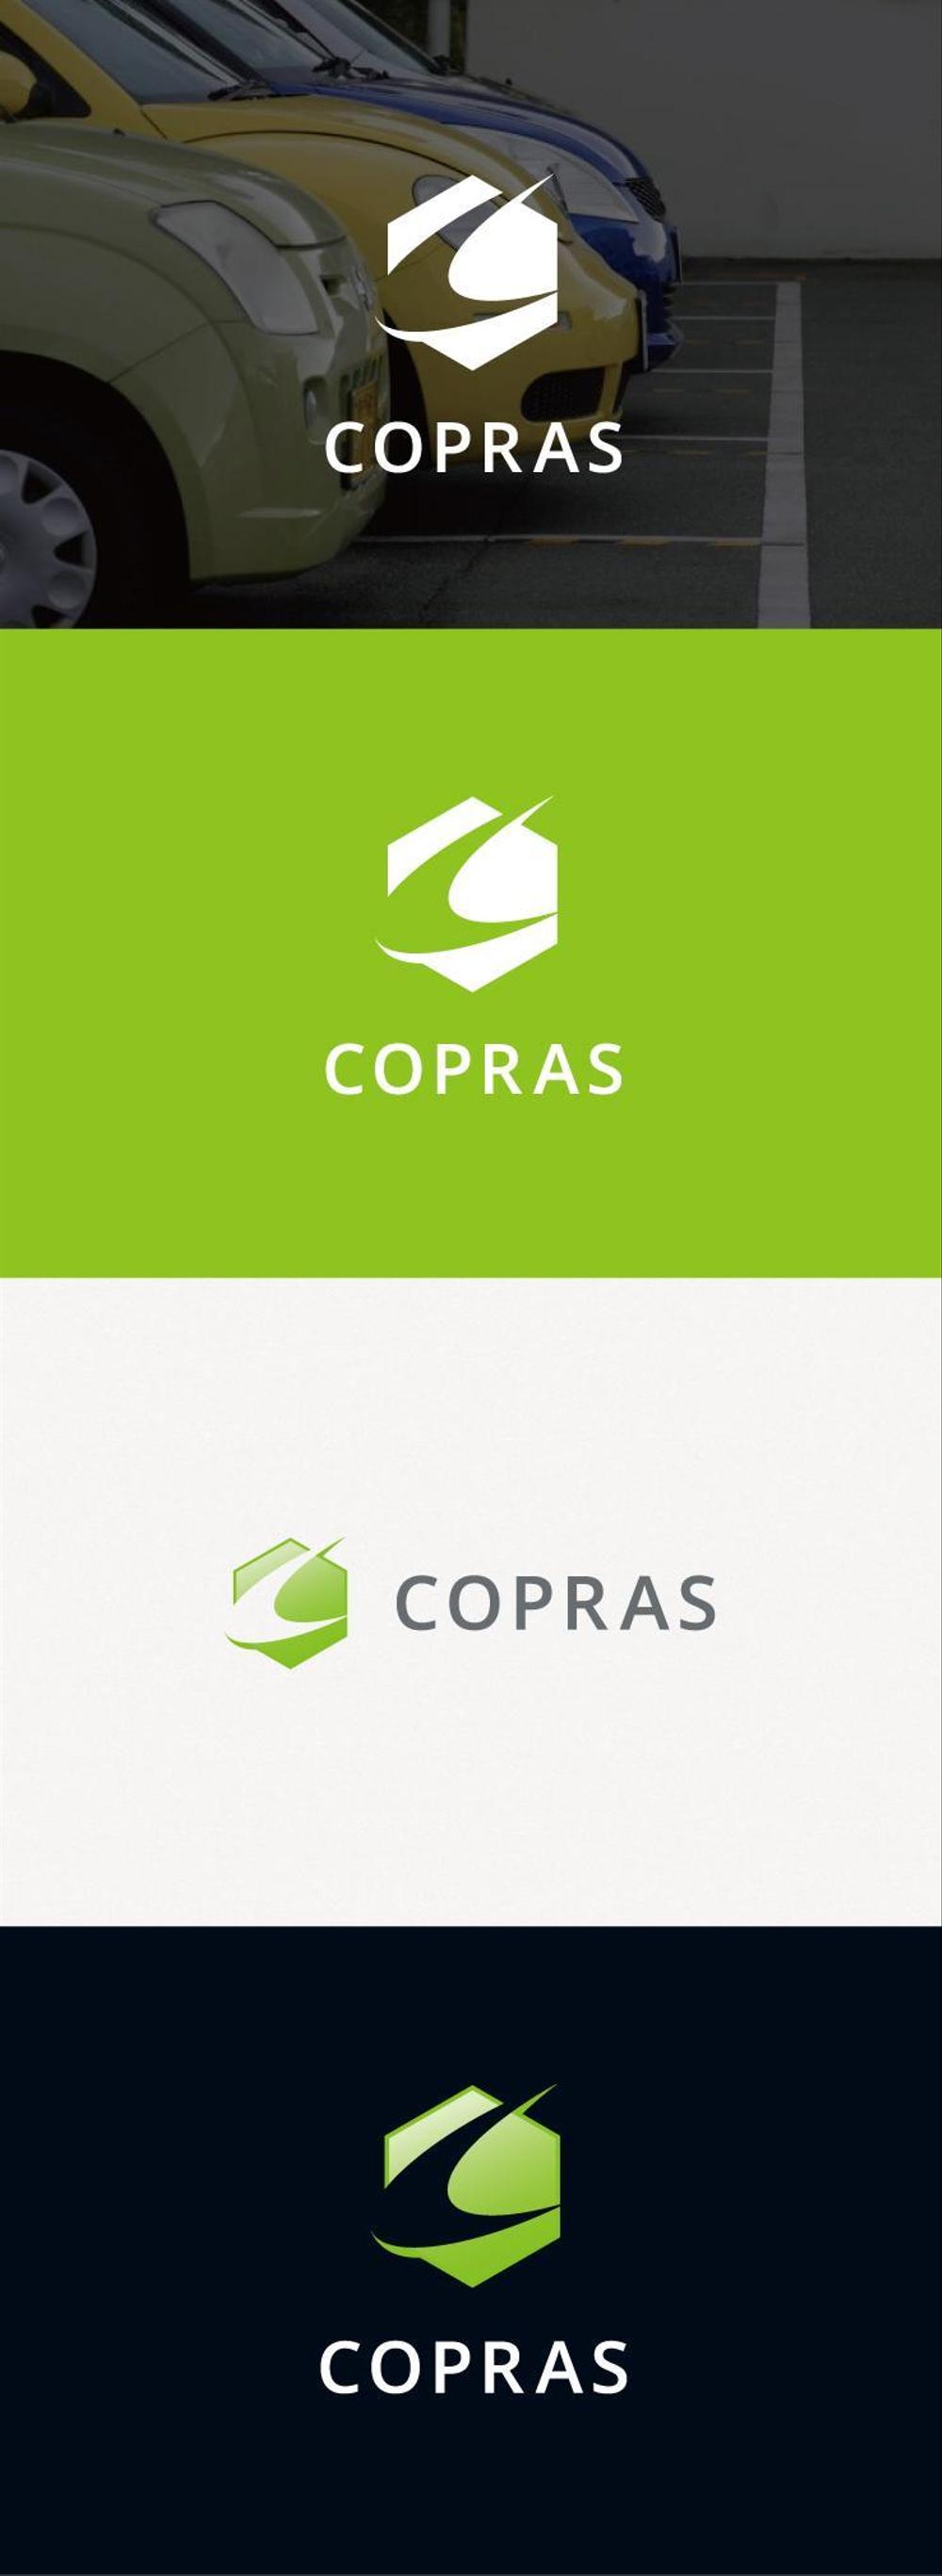 サービス業に特化した会社コプラス「COPRAS」のロゴ